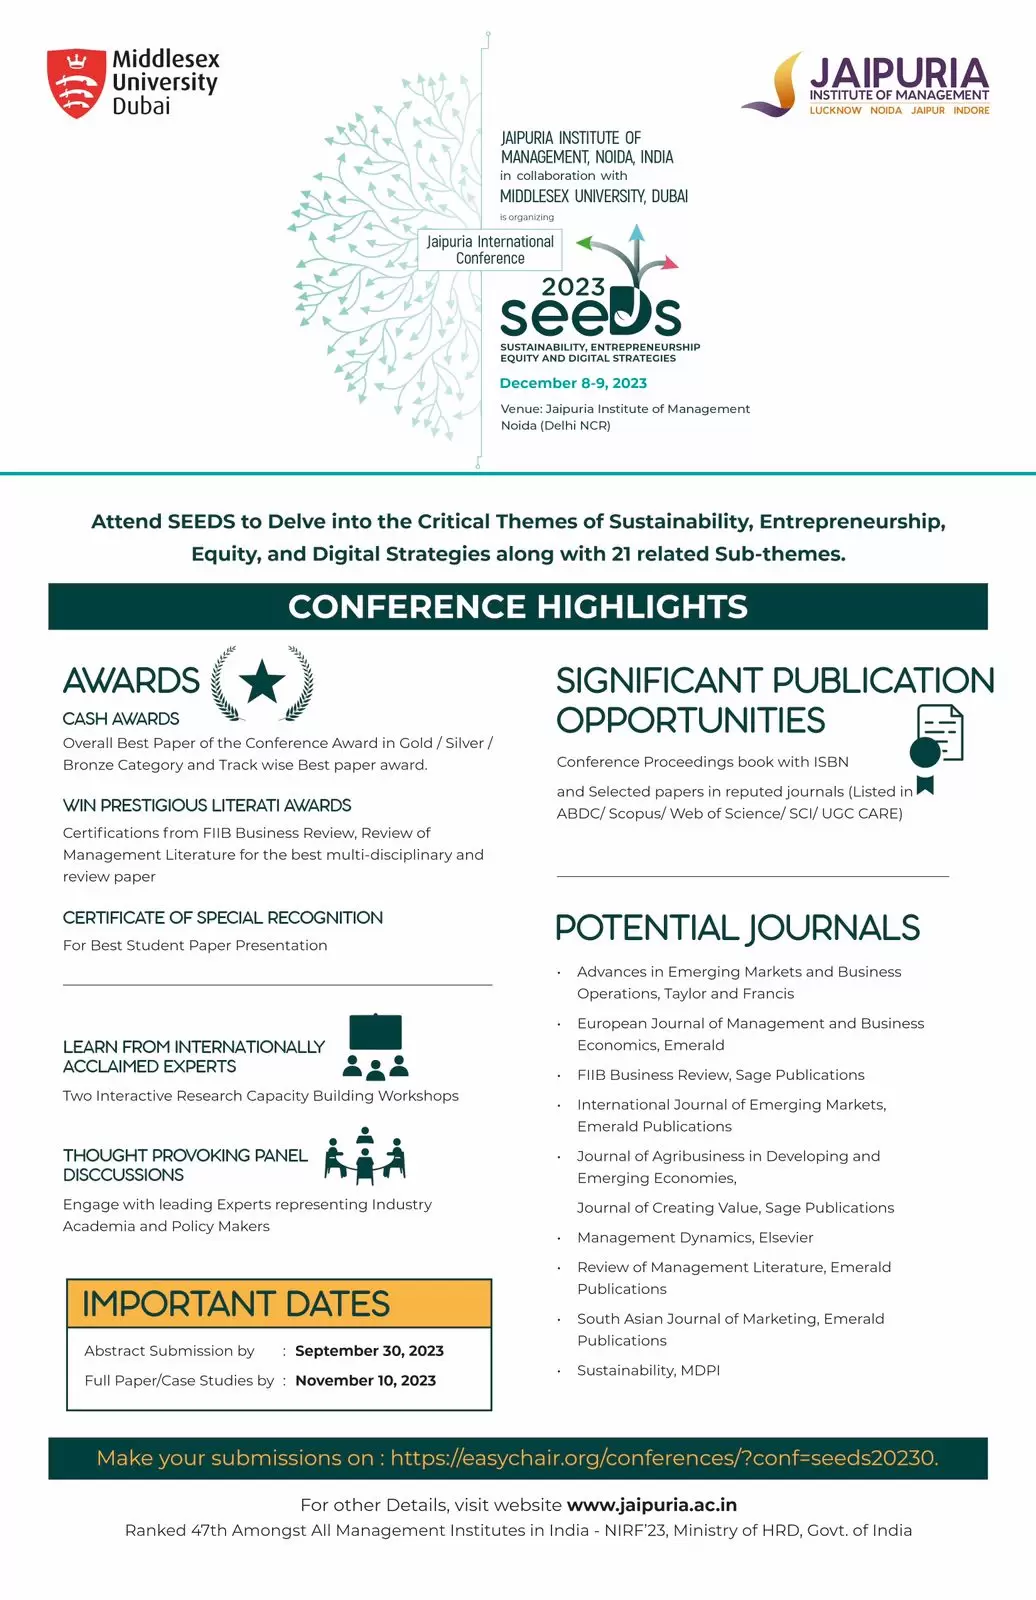 SEEDS sustainability, entrepreneurship, equity & digital strategy